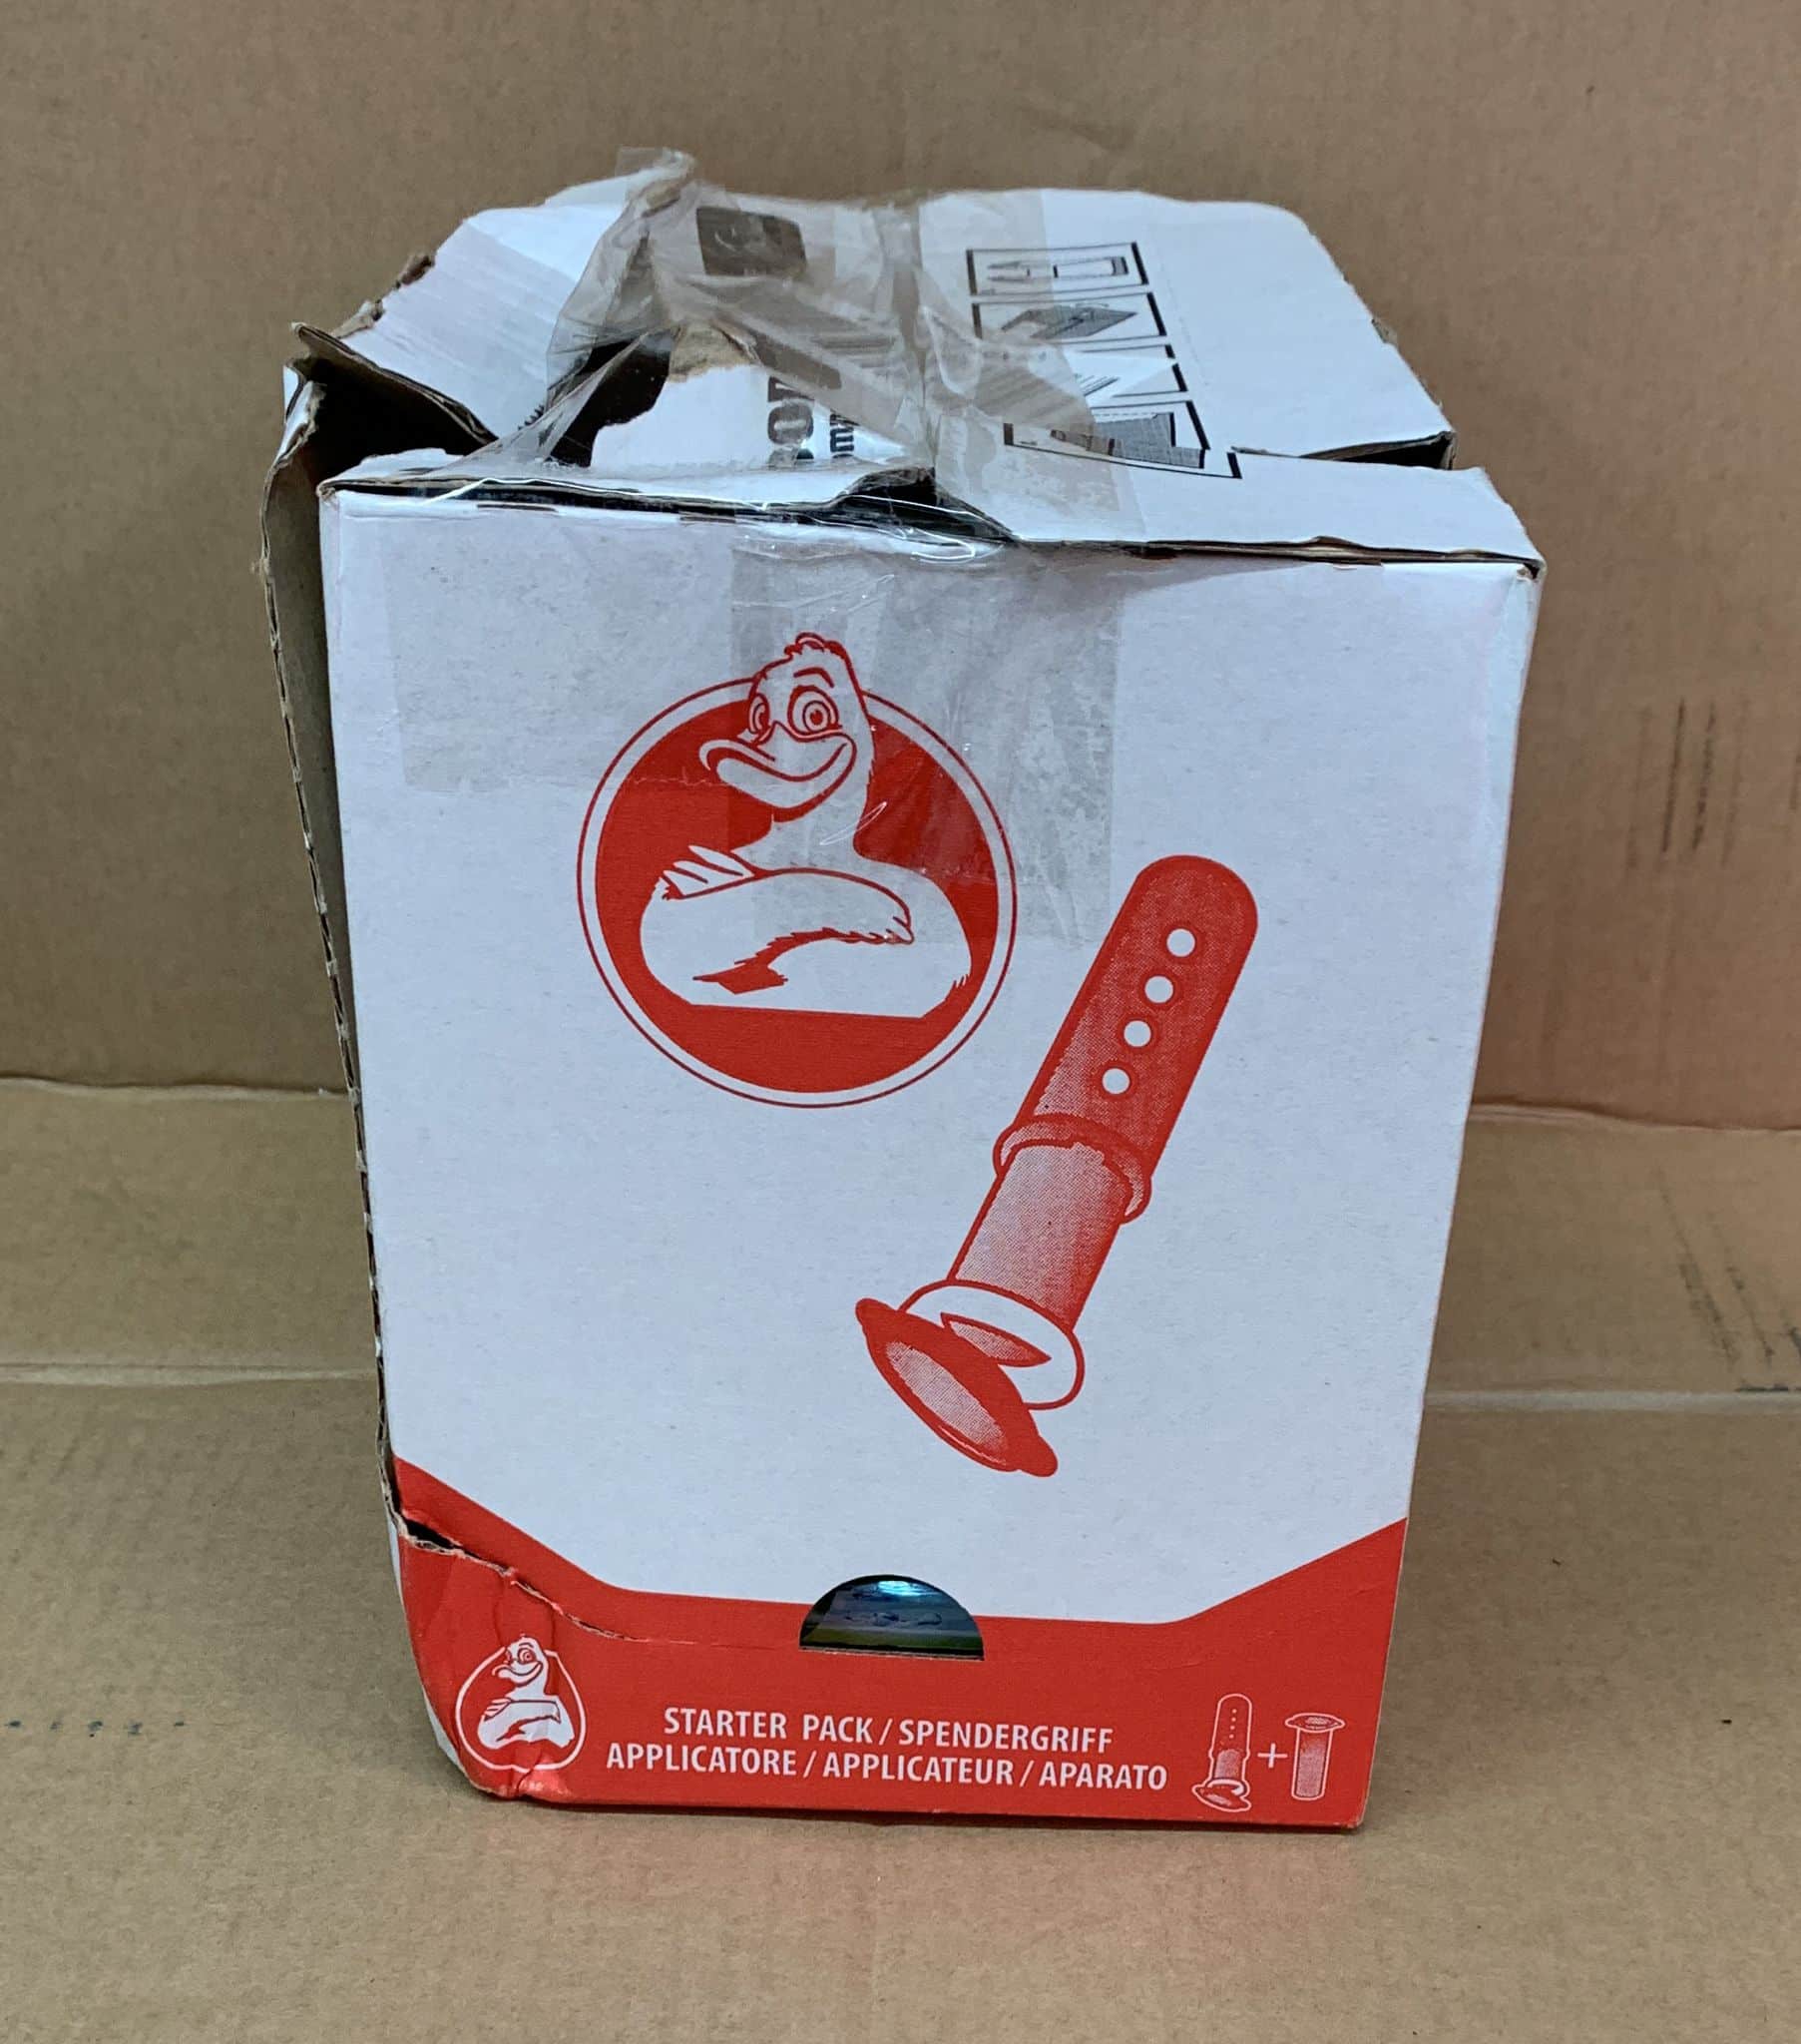 Duck Fresh Disc Toilet Cleaner Starter Pack- Box of 5-6572